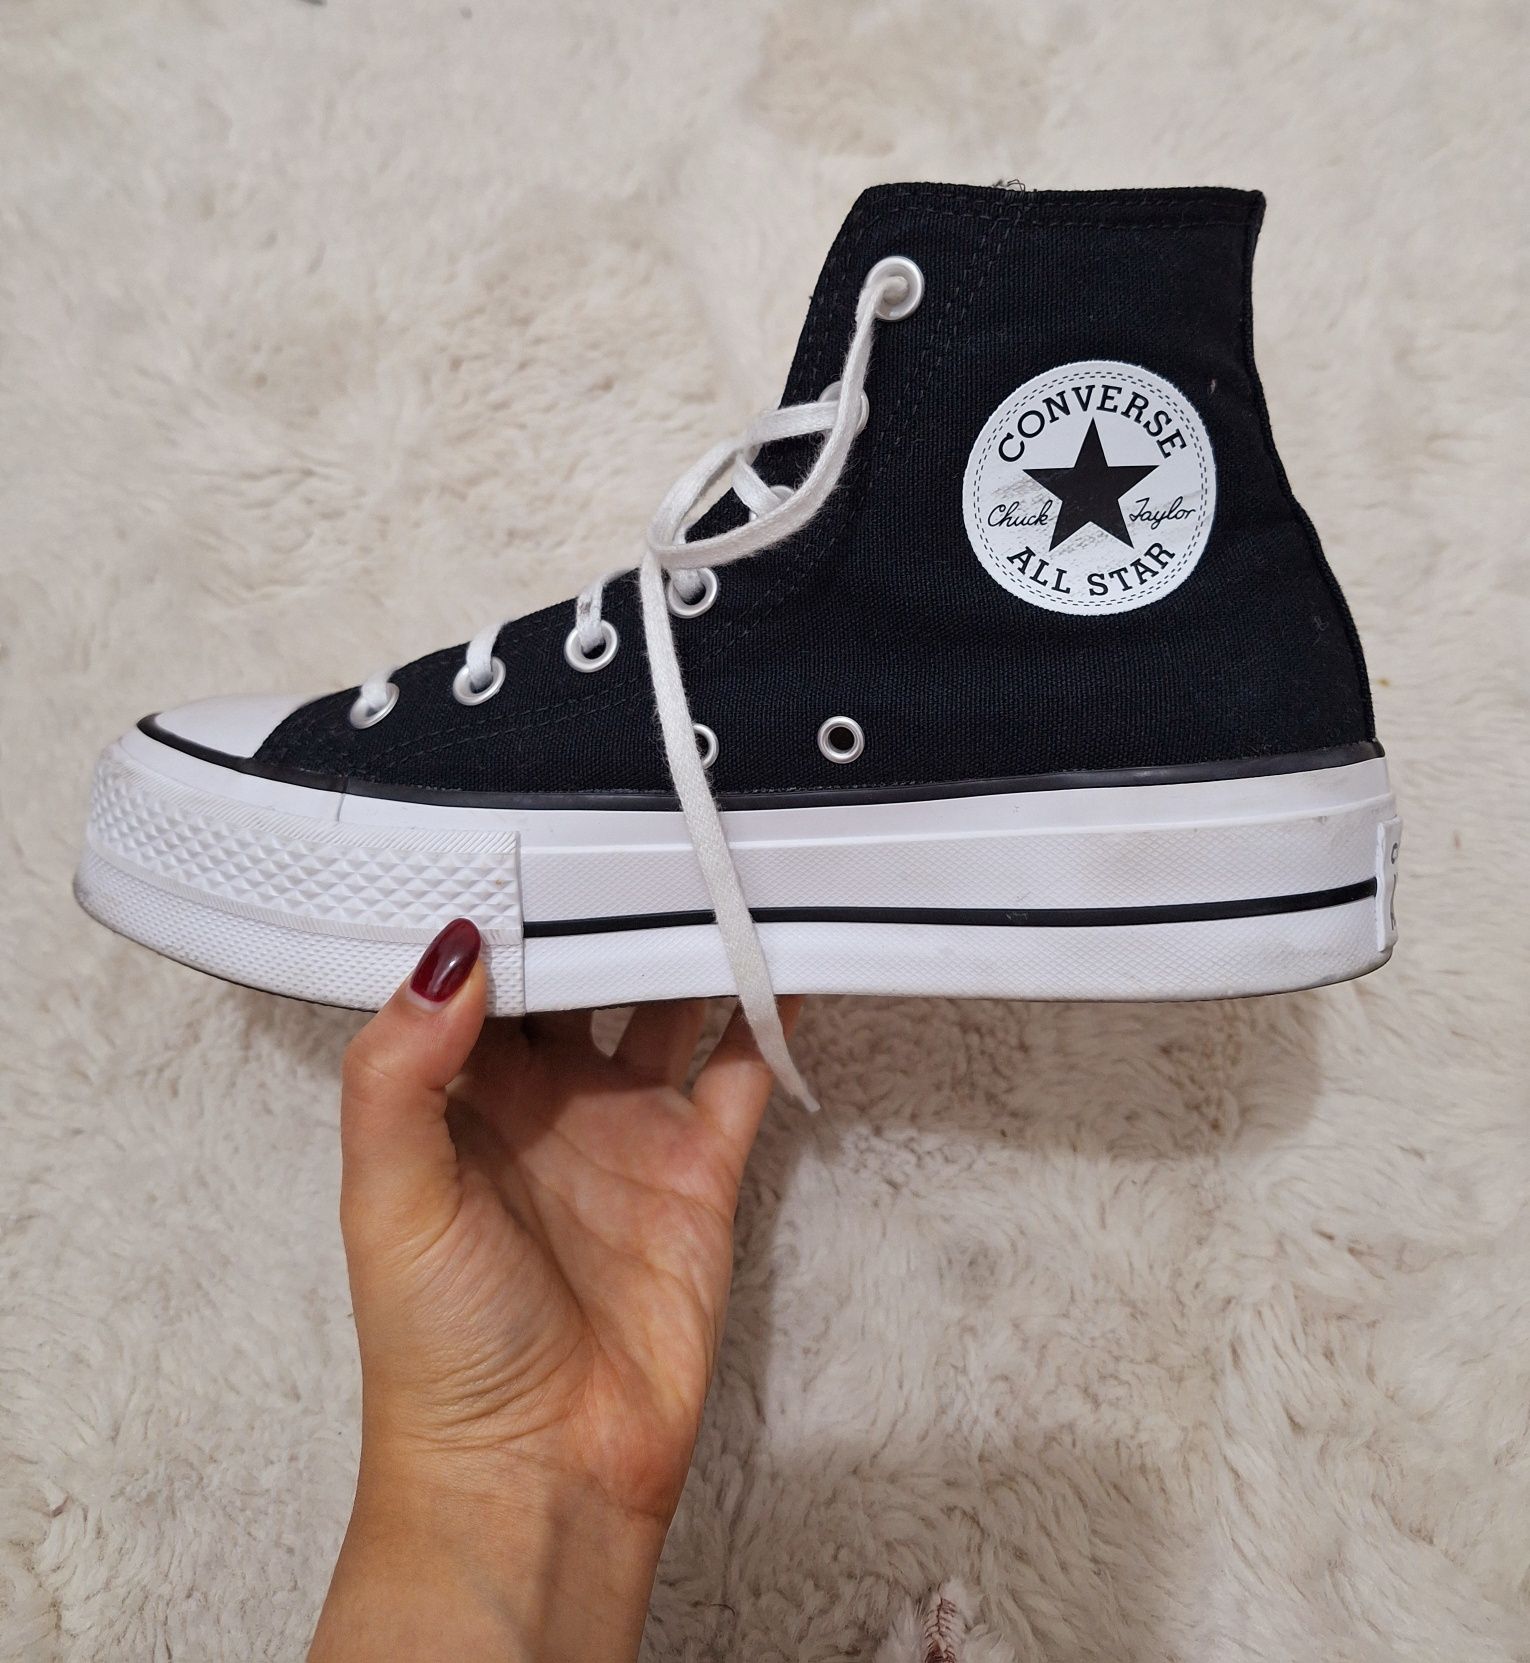 All Star PRETO - Miranda Shoes